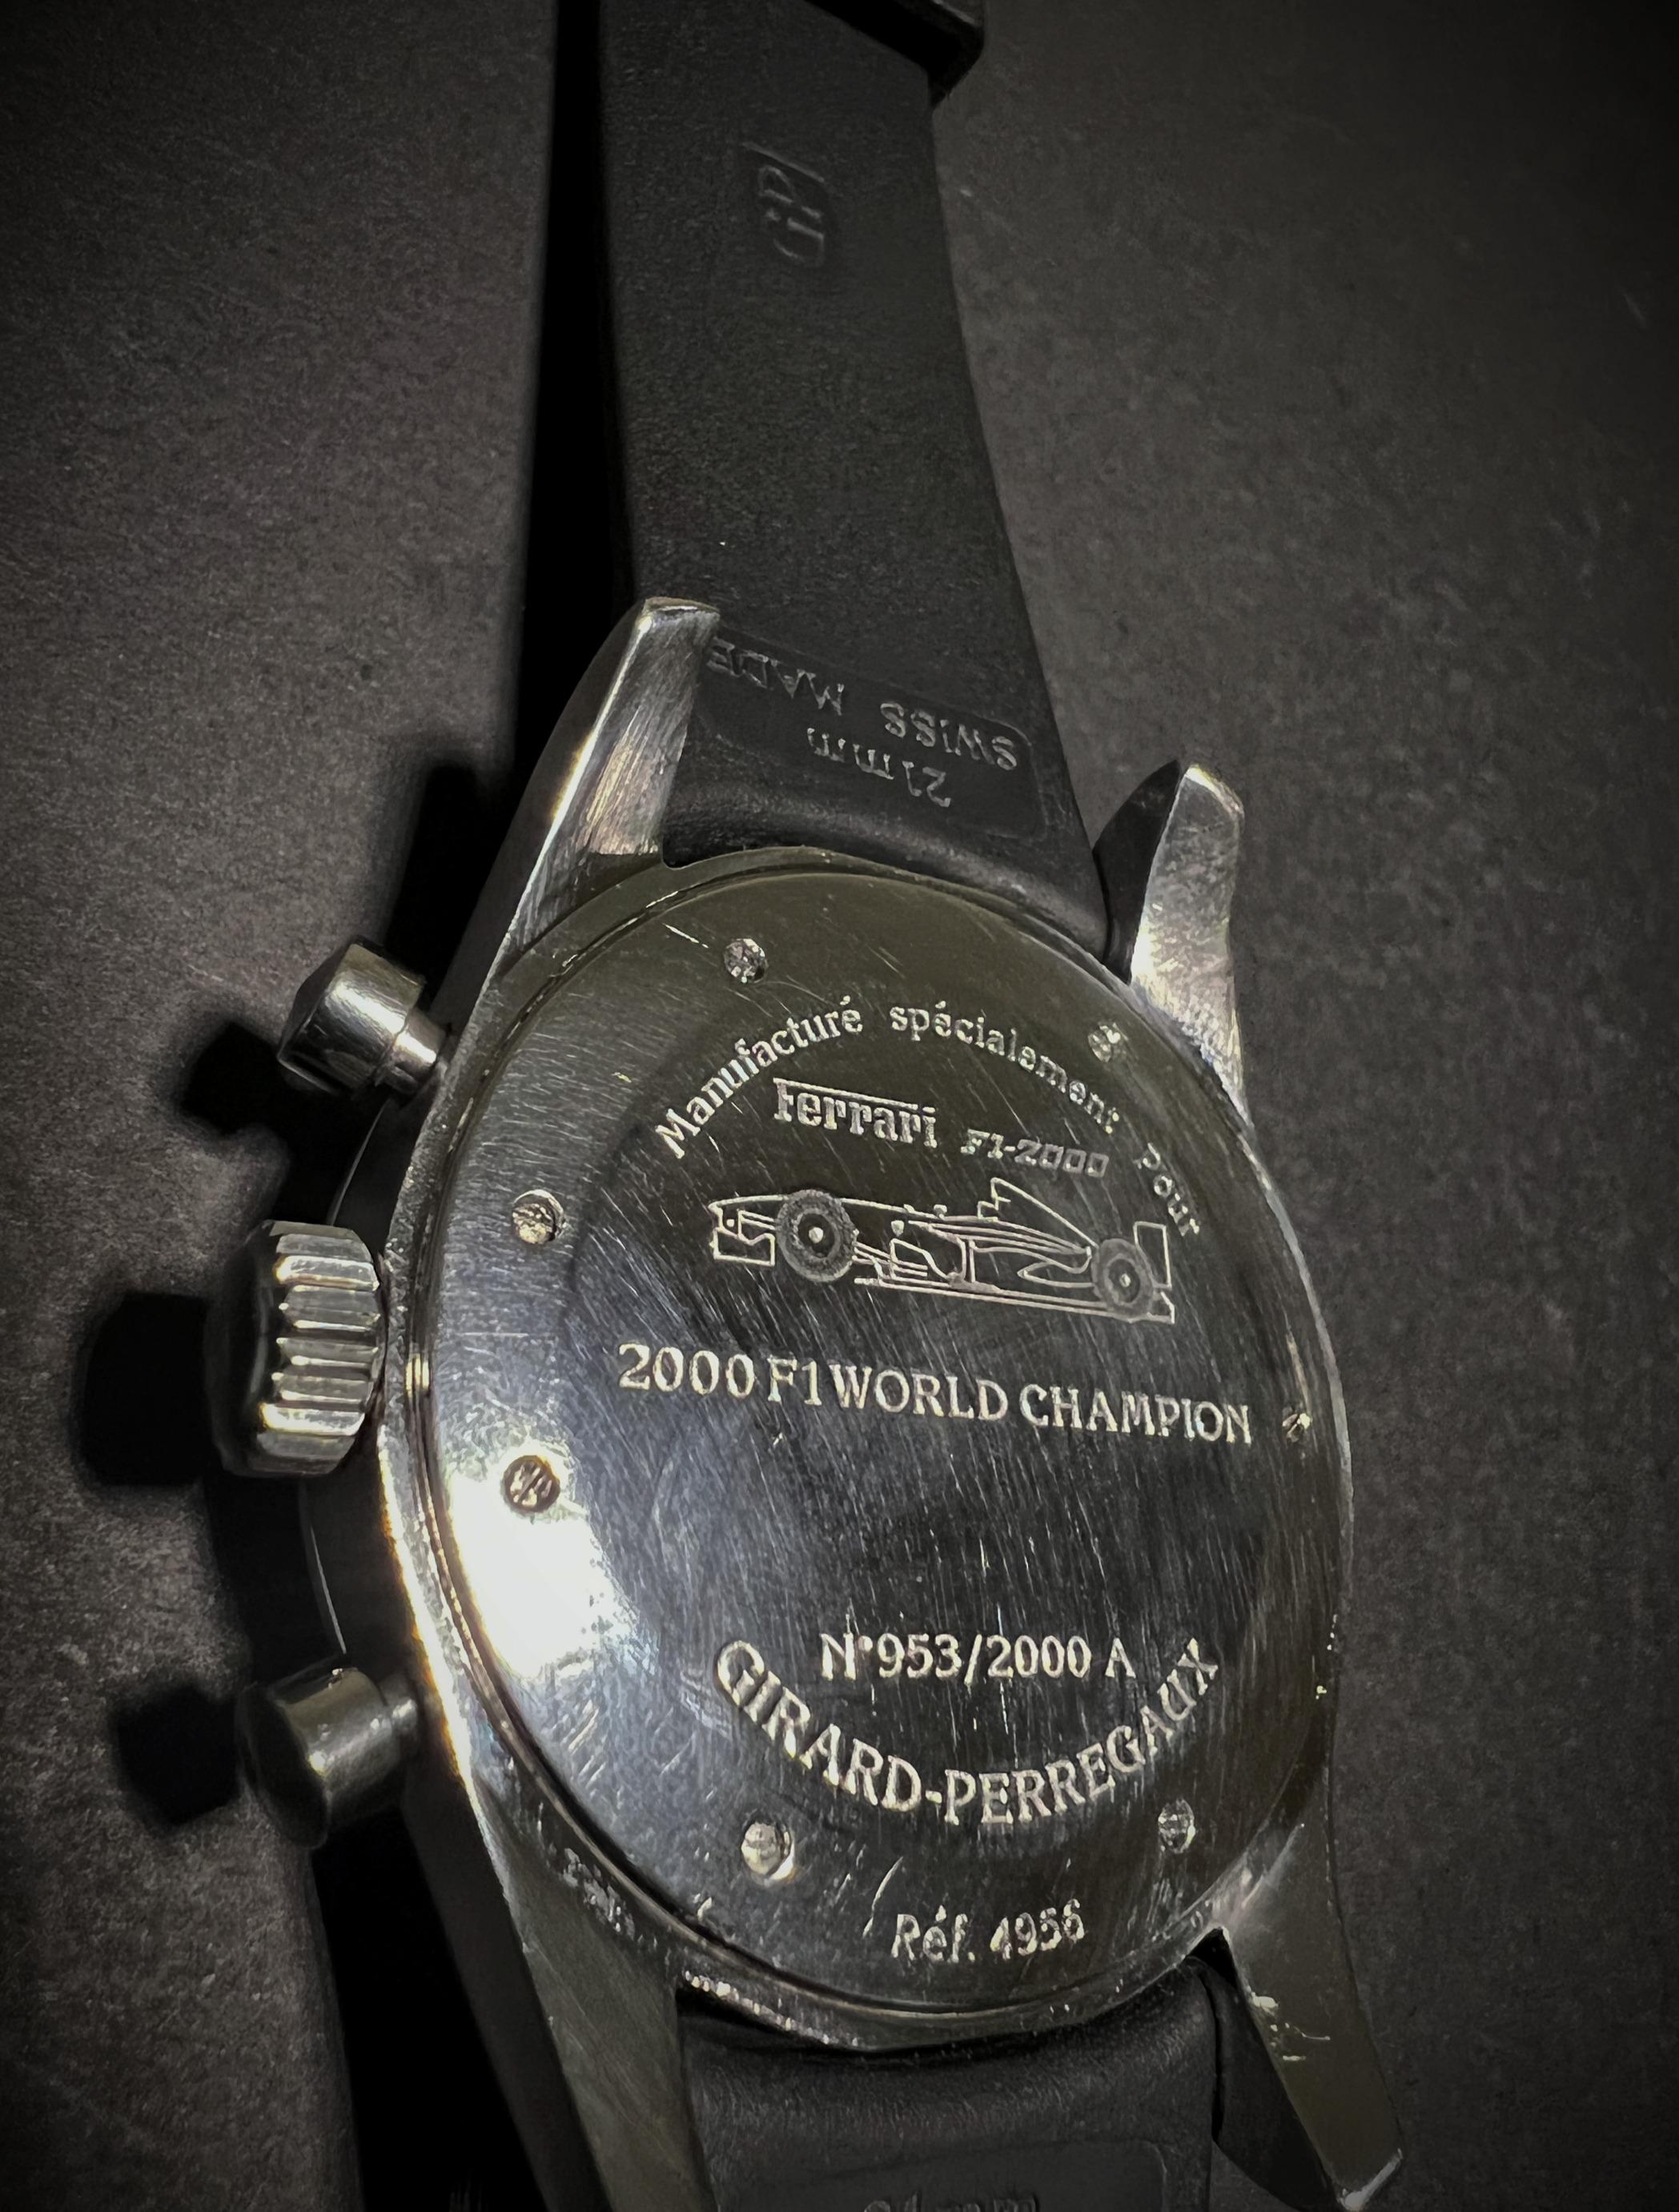 Girard-Perregaux Ferrari 2000 F1 World Champion Chronograph In Good Condition For Sale In Bradford, Ontario